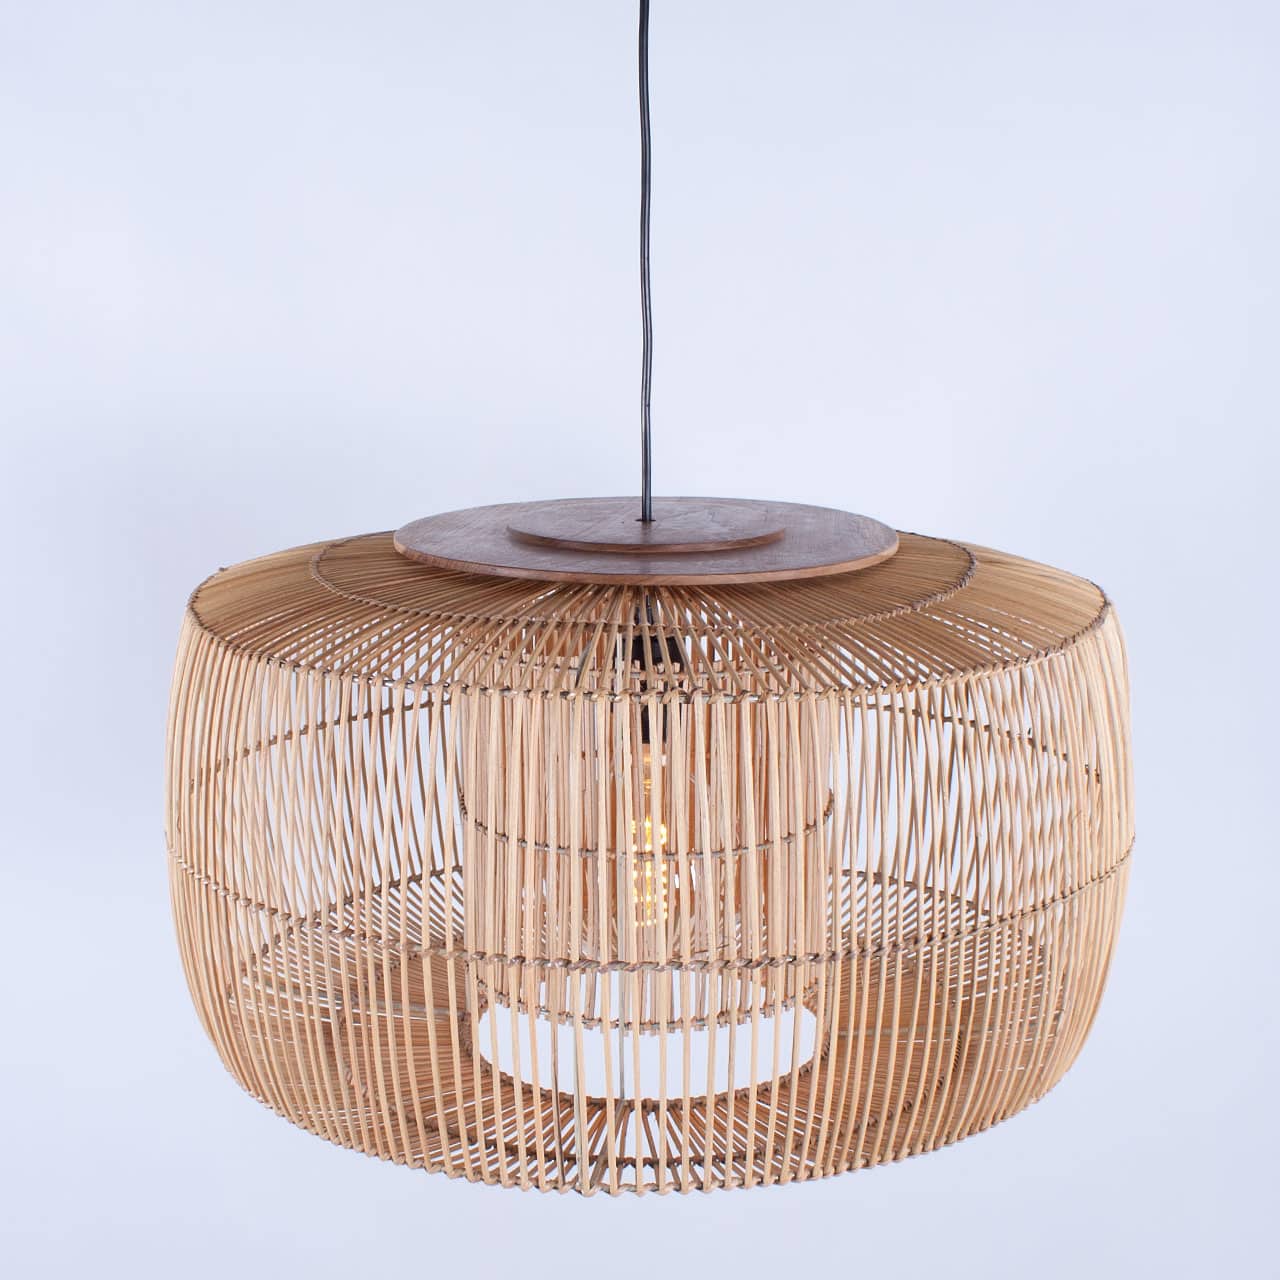 Rotan hanglamp Tondo met hout 60 cm